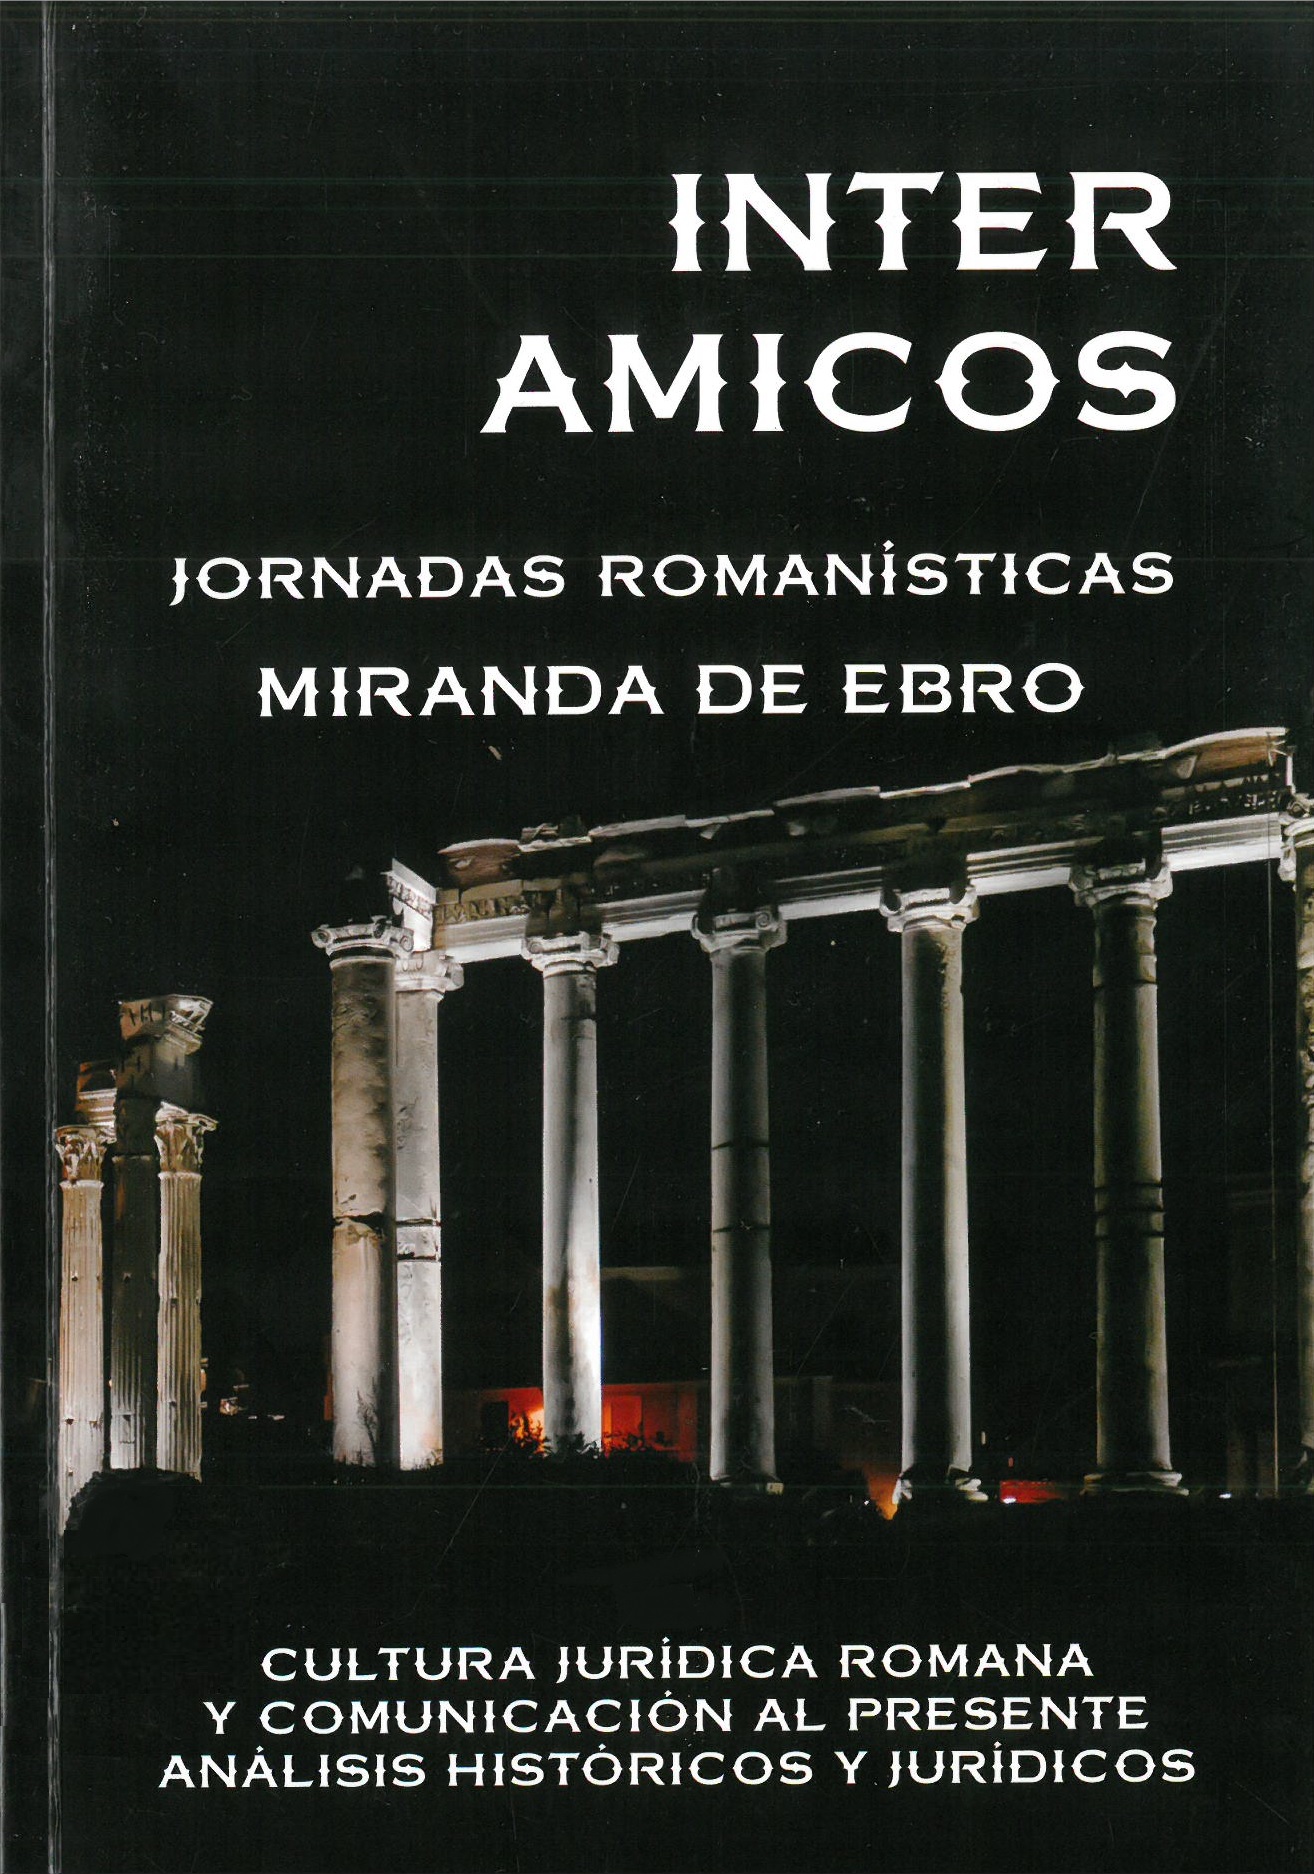 Imagen de portada del libro Jornadas Romanísticas Inter Amicos